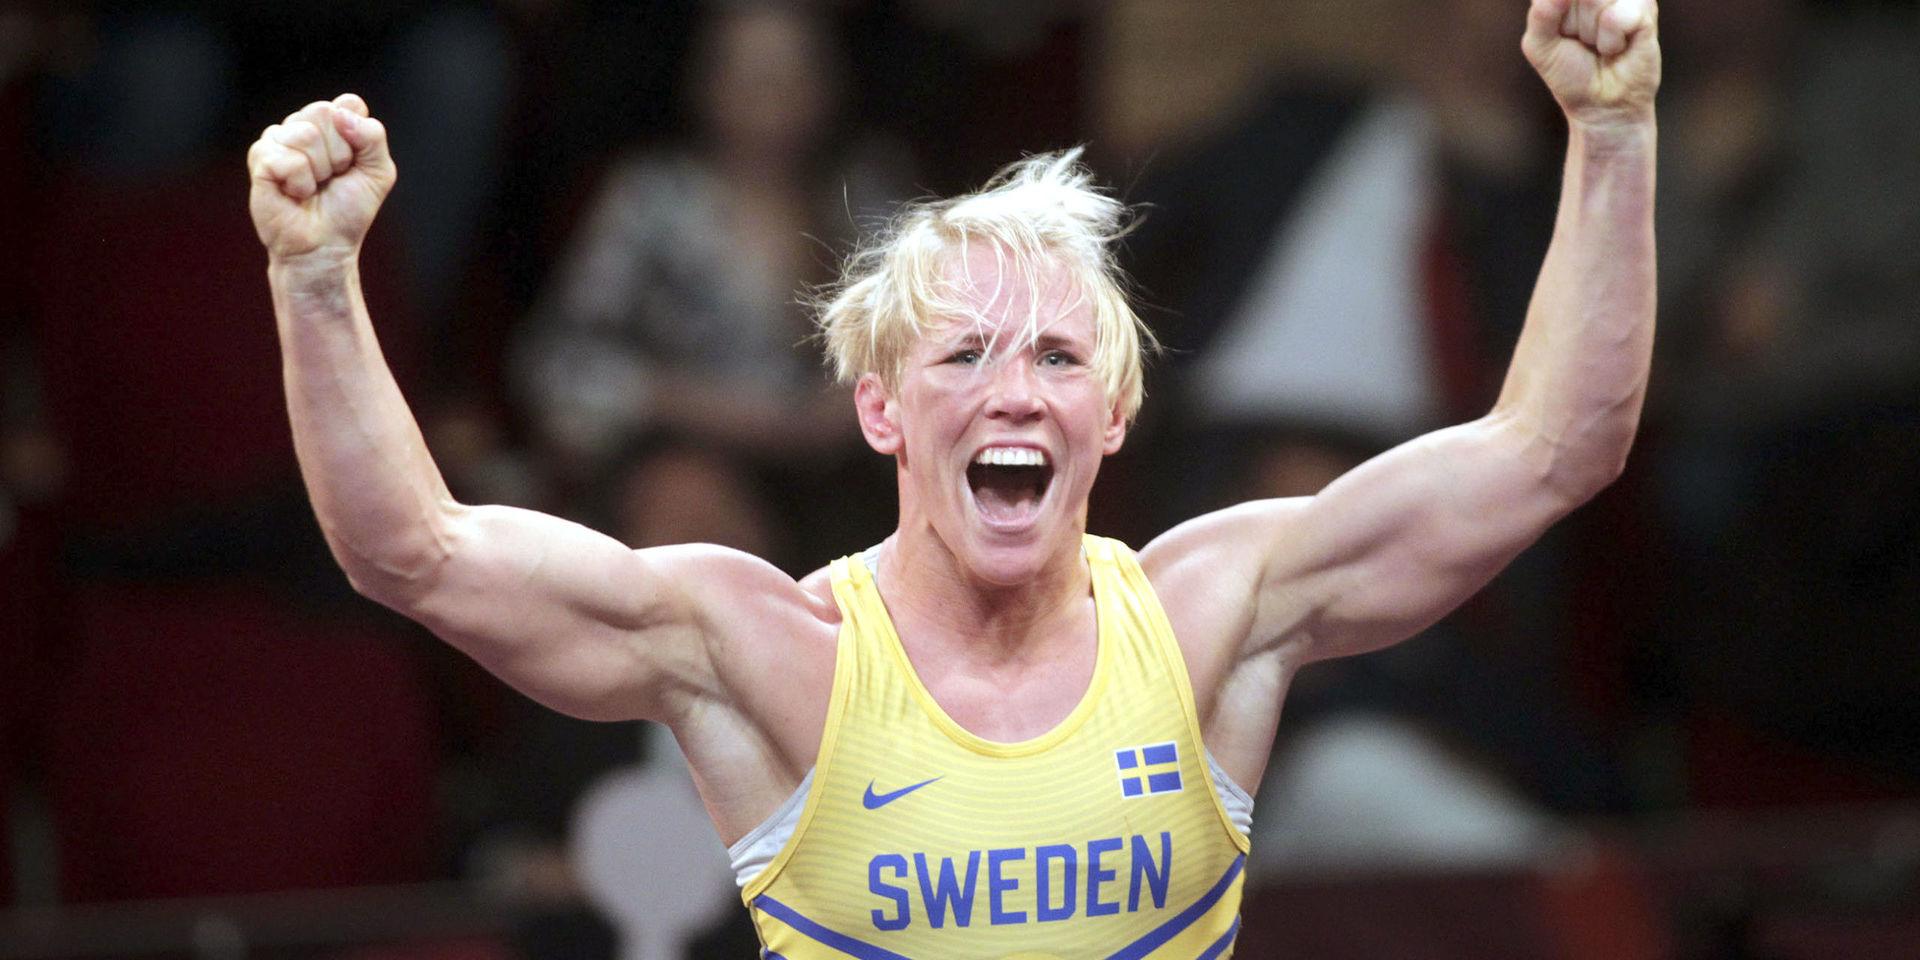 Sveriges Jenny Fransson är klar för final i brottnings-VM i Kazakstan. Arkivbild.